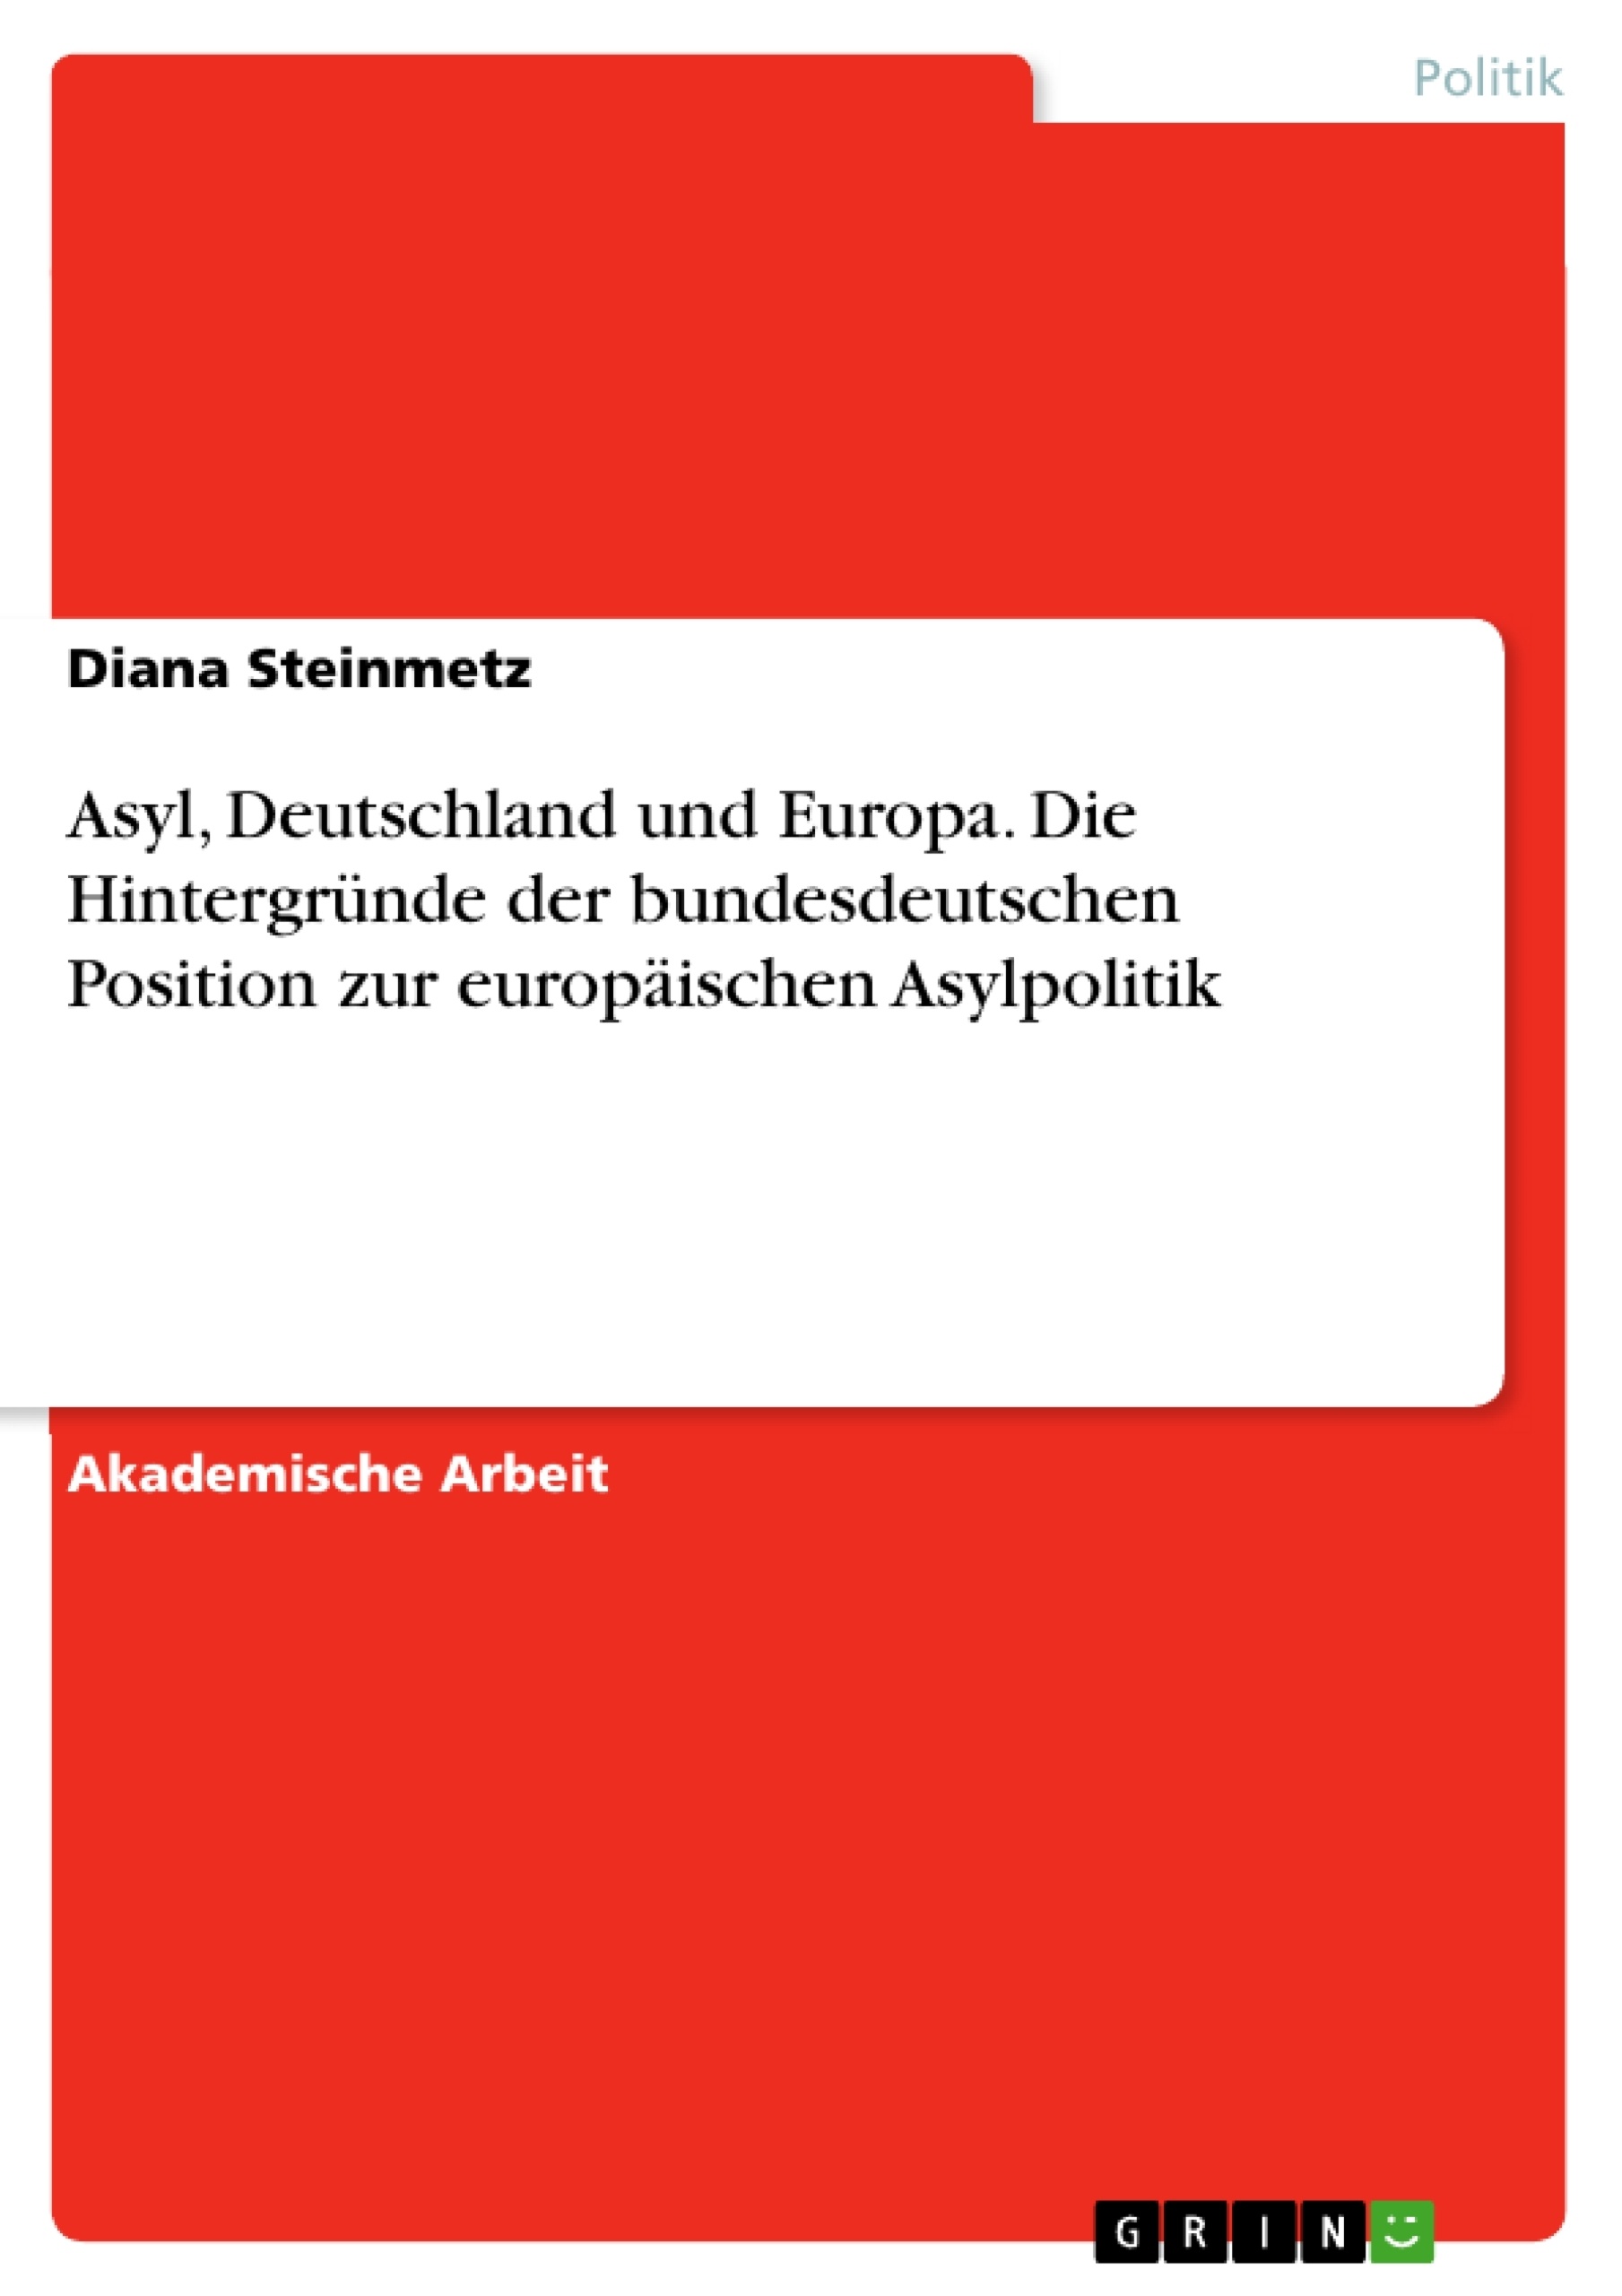 Title: Asyl, Deutschland und Europa. Die Hintergründe der bundesdeutschen Position zur europäischen Asylpolitik